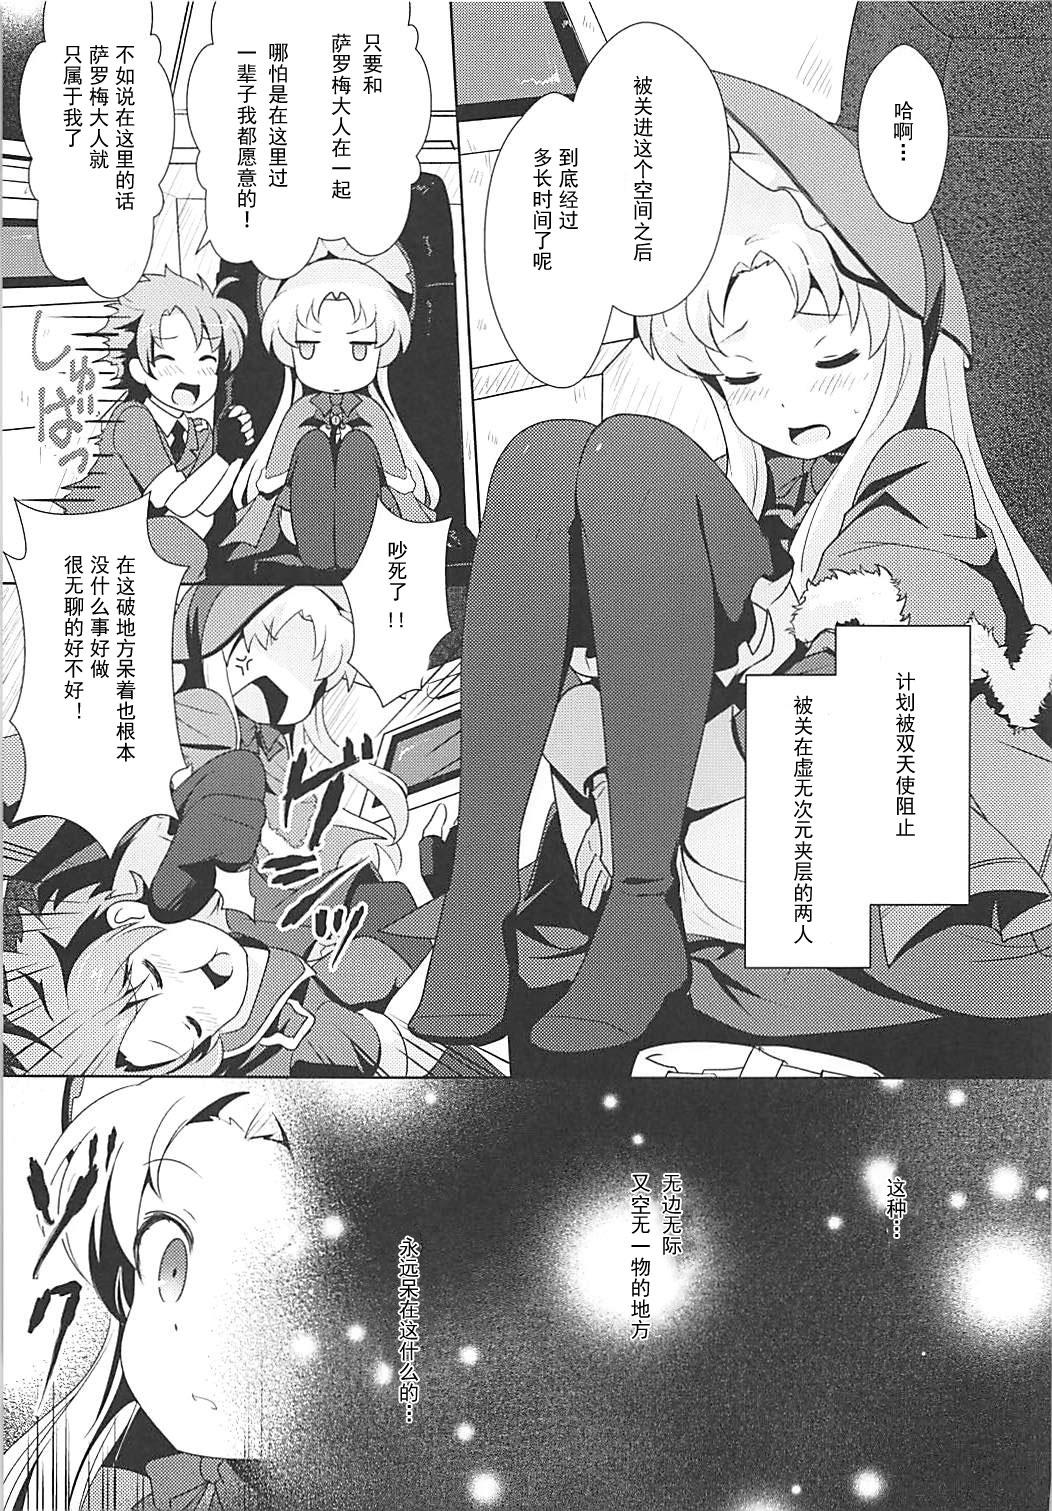 Asian Kinki no Alchimia - Kaitou tenshi twin angel Stroking - Page 4